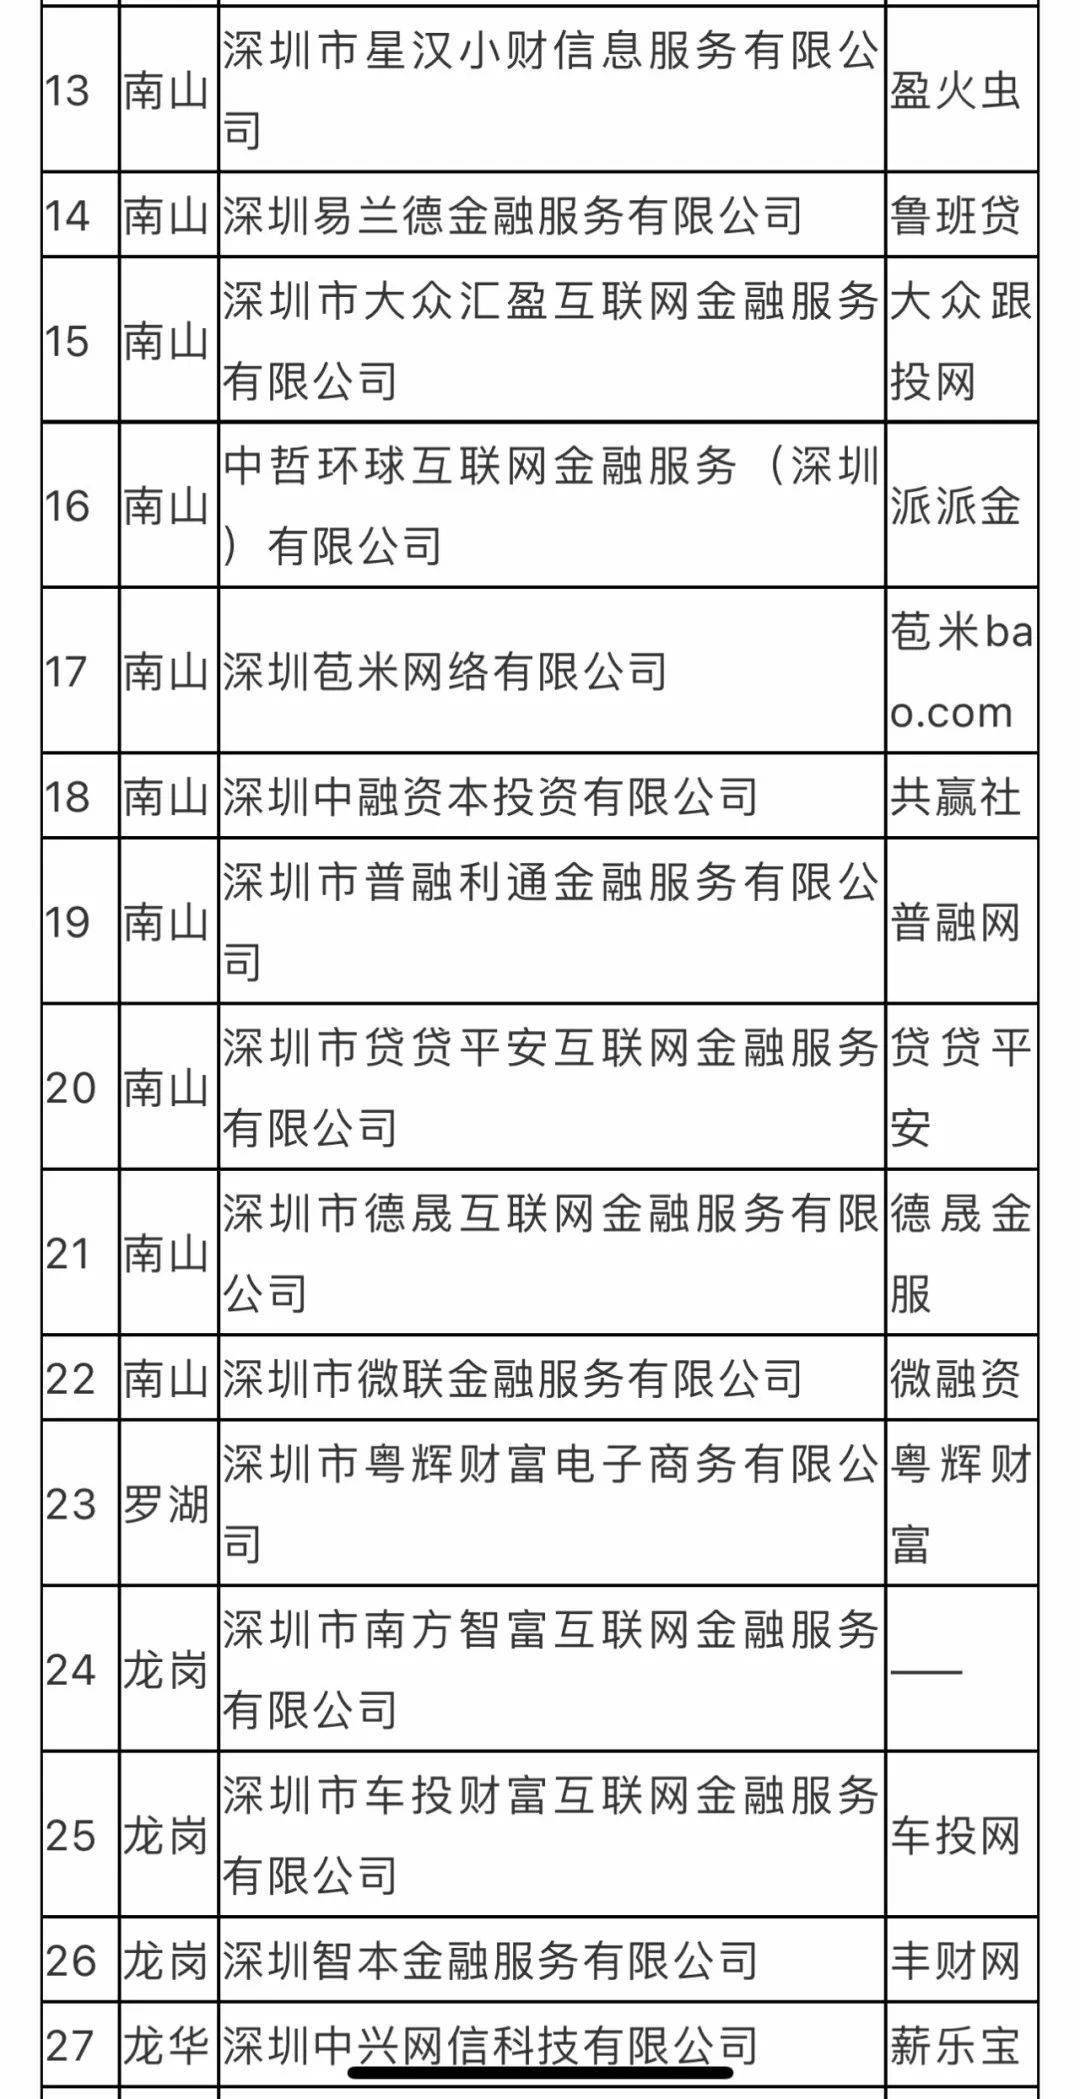 再增6家 深圳合计209家P2P平台自愿退出 全名单